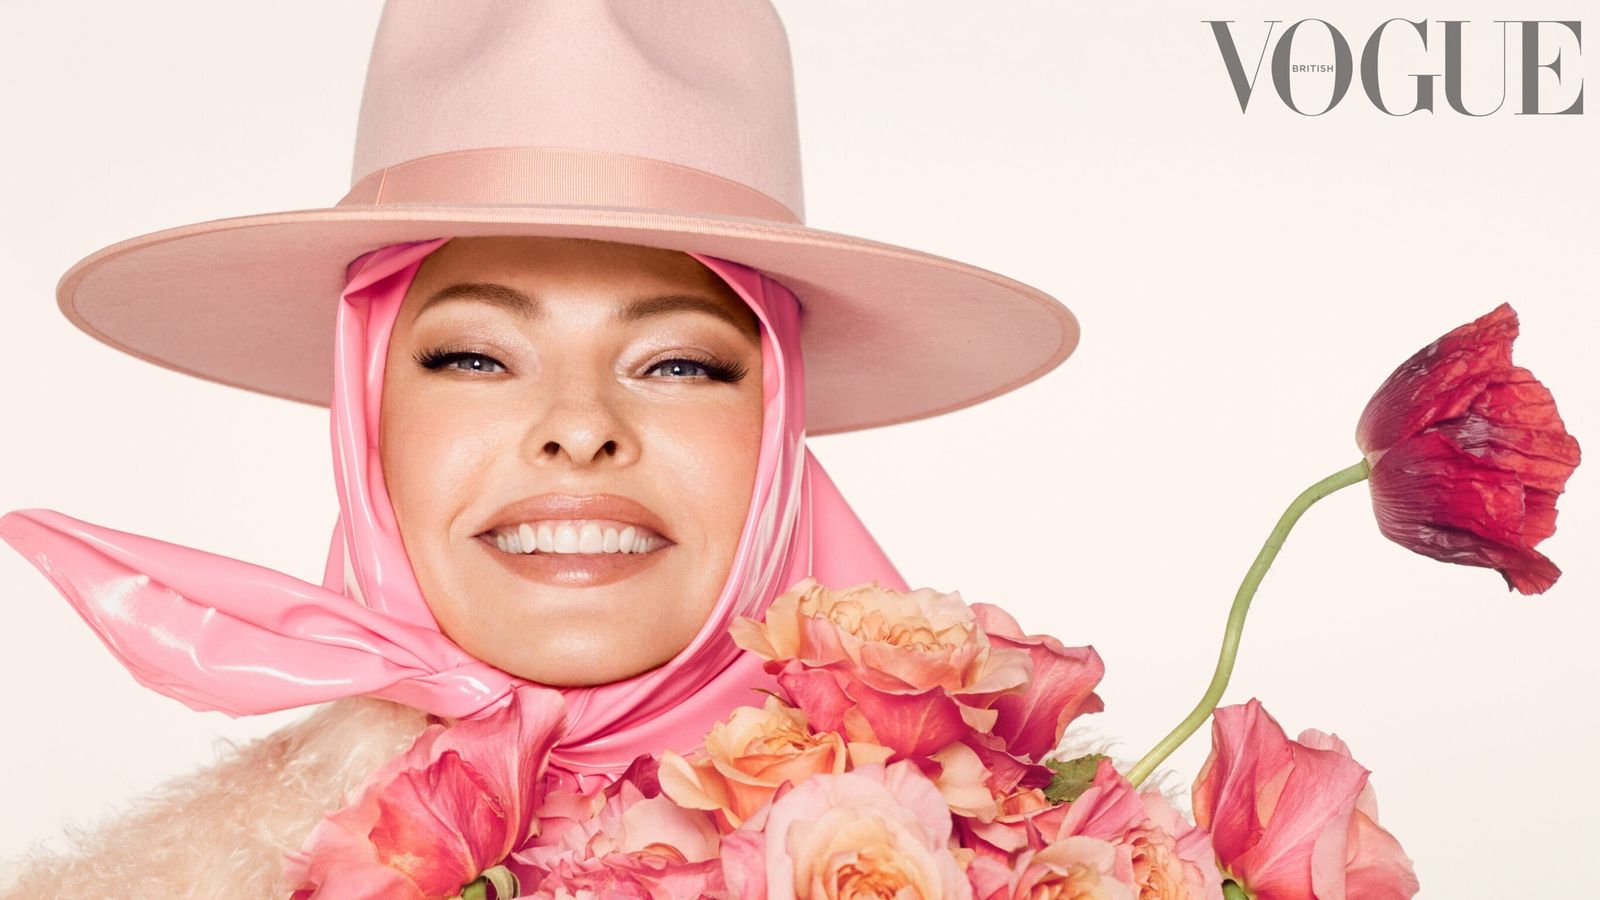 Линда Евангелиста позирует перед британским Vogue с клейкой лентой на лице после того, как ее оставили «изуродованной» |  Энты и новости искусства